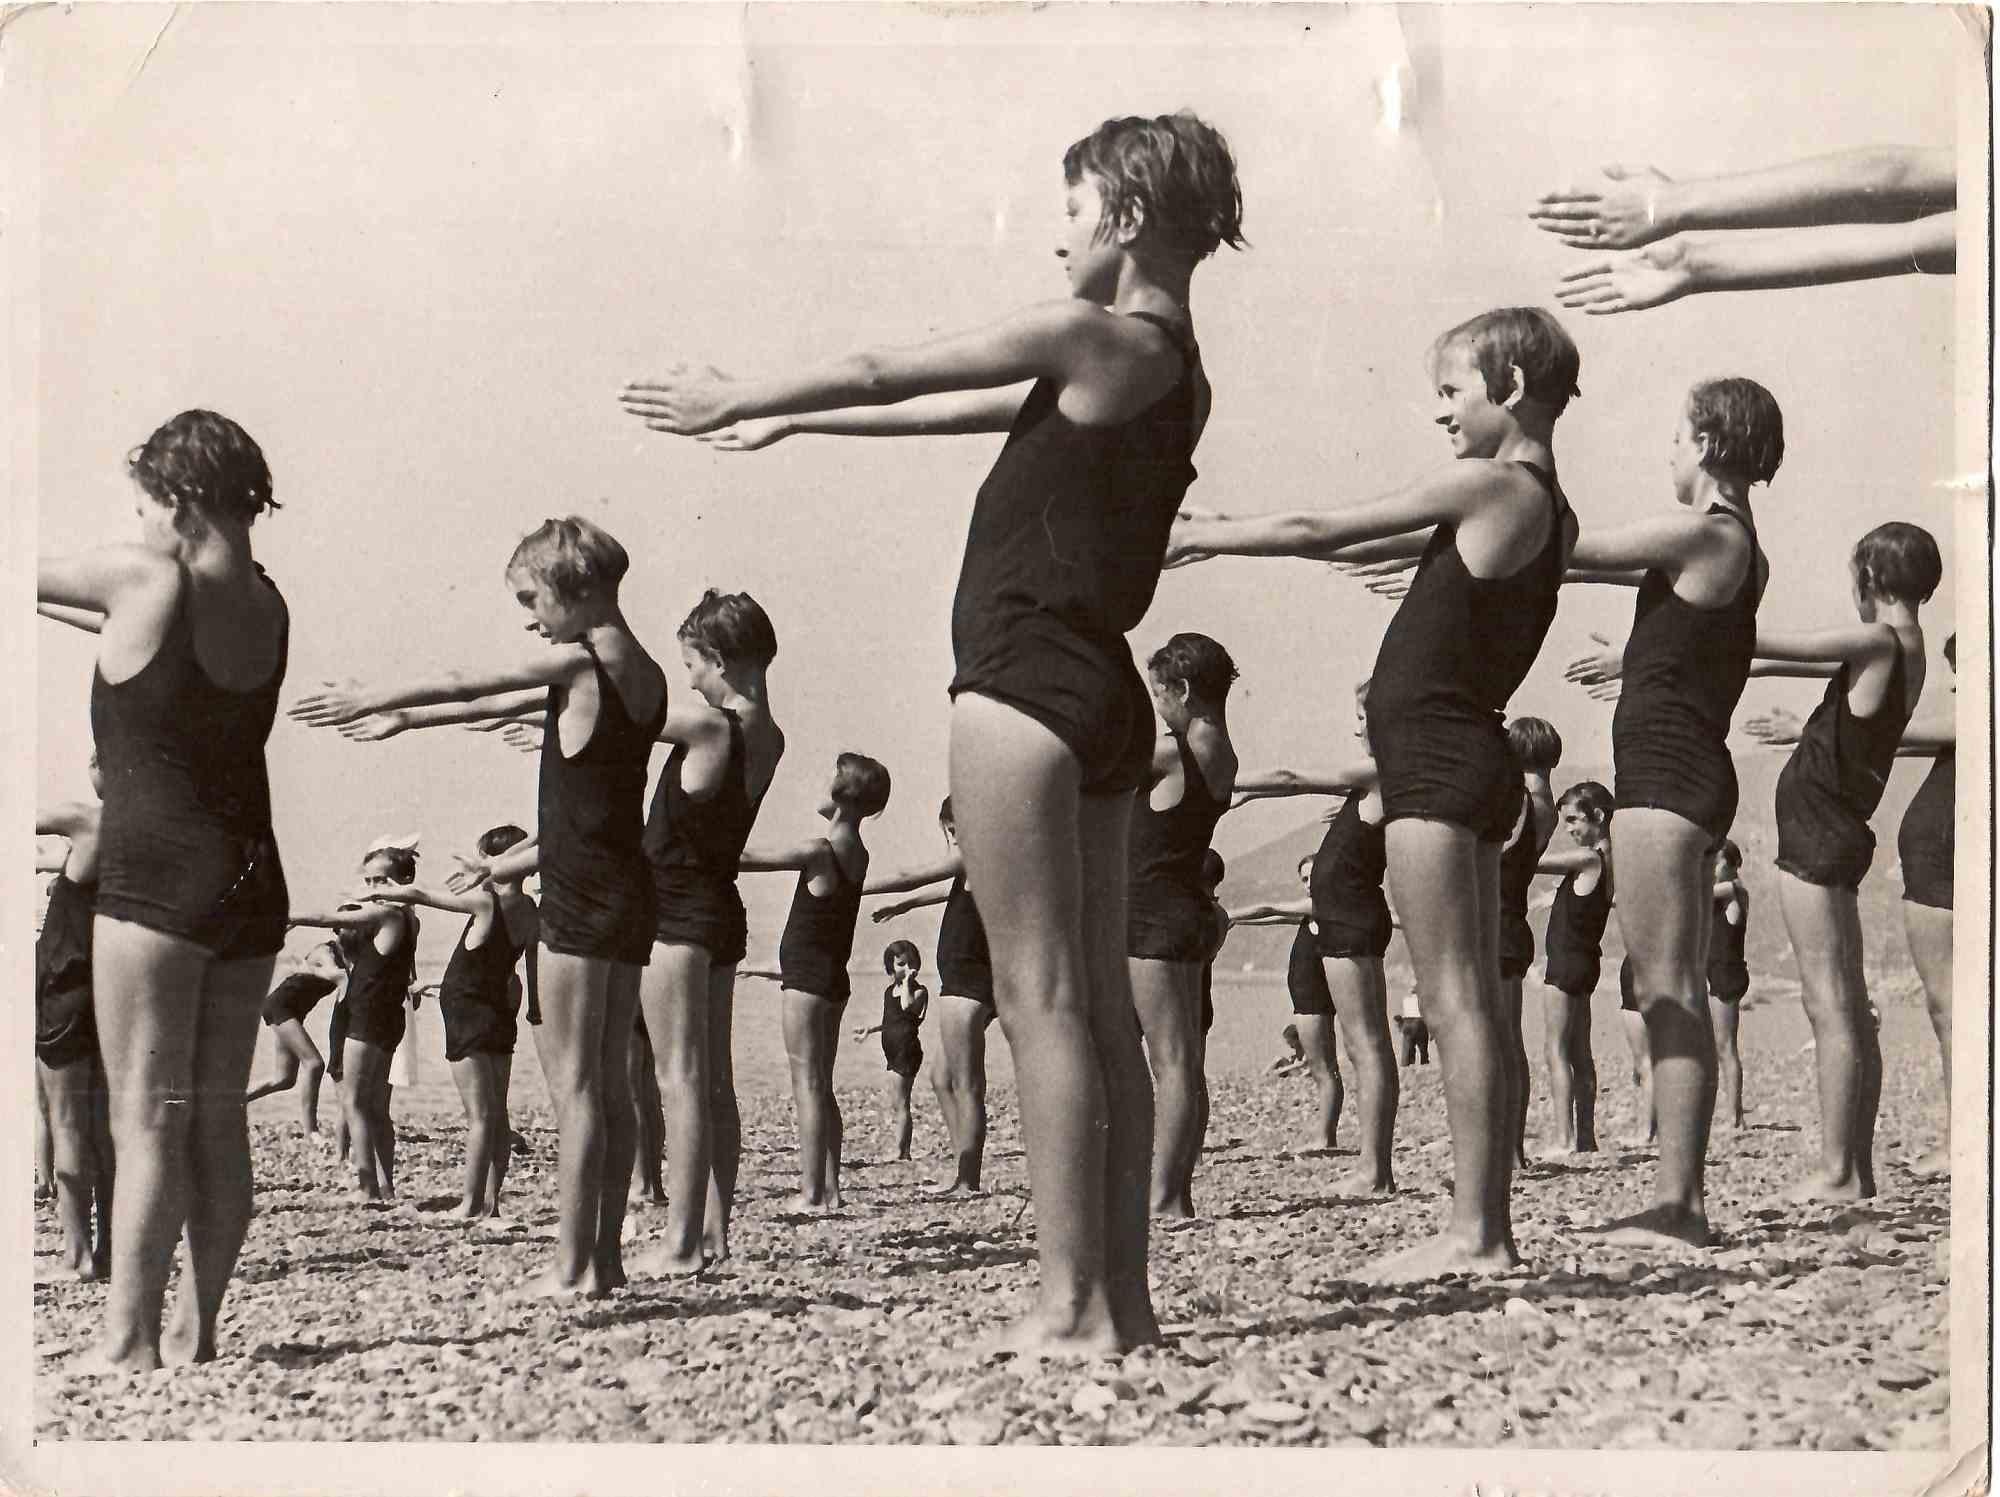 Swimmer Girls - Vintage B/W photo - 1930s